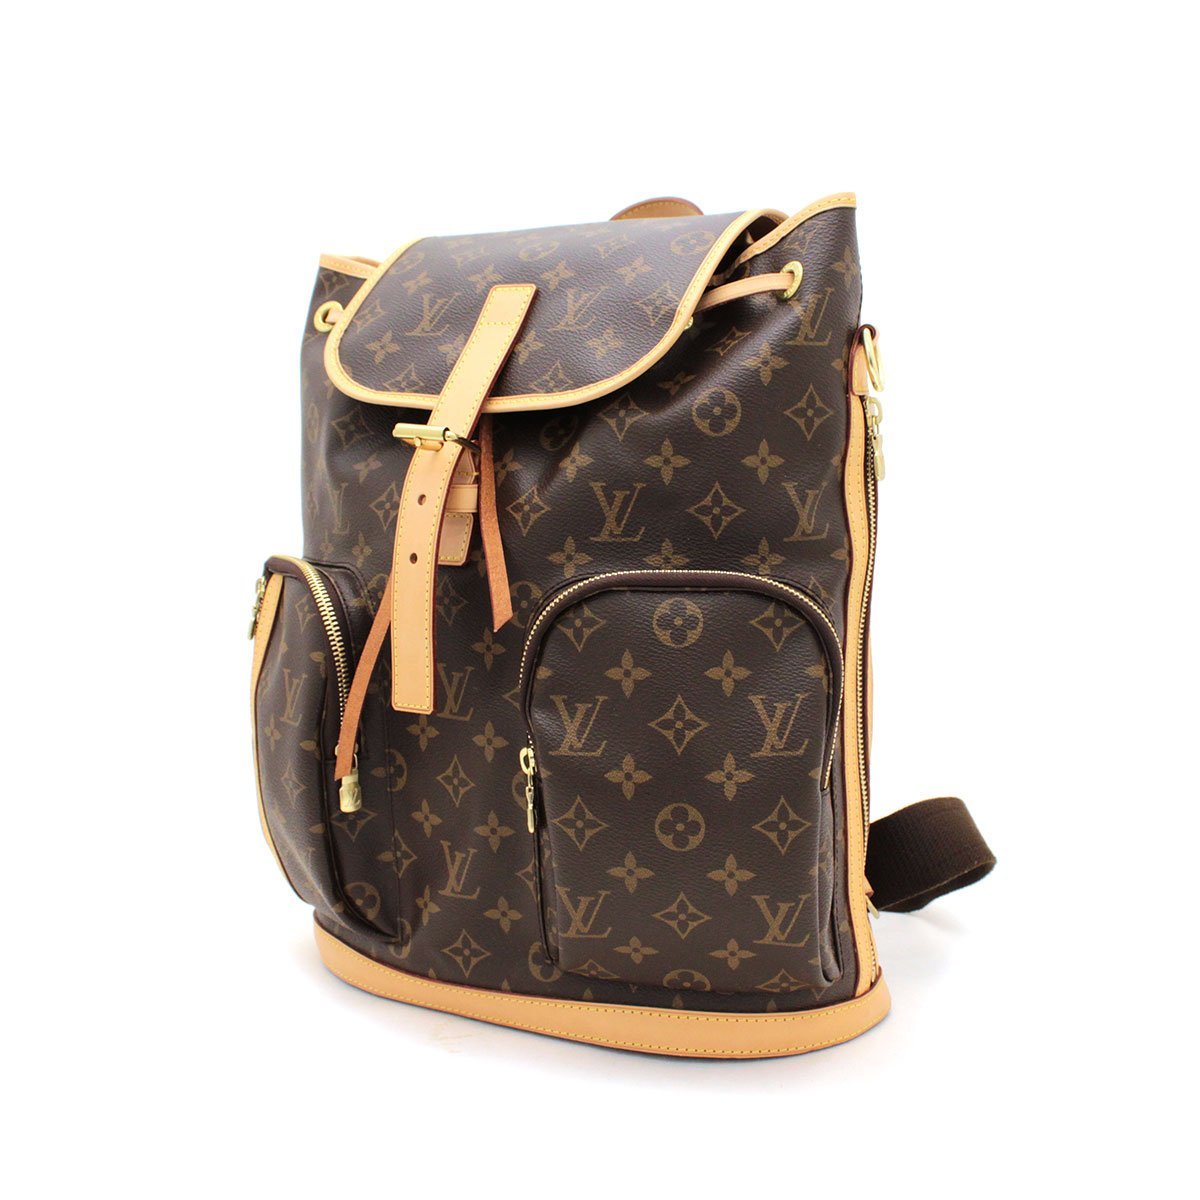 ルイヴィトン(Louis Vuitton) サック・ア・ド・ボスフォール M40107 ブラウン バッグ かばん 送料900円